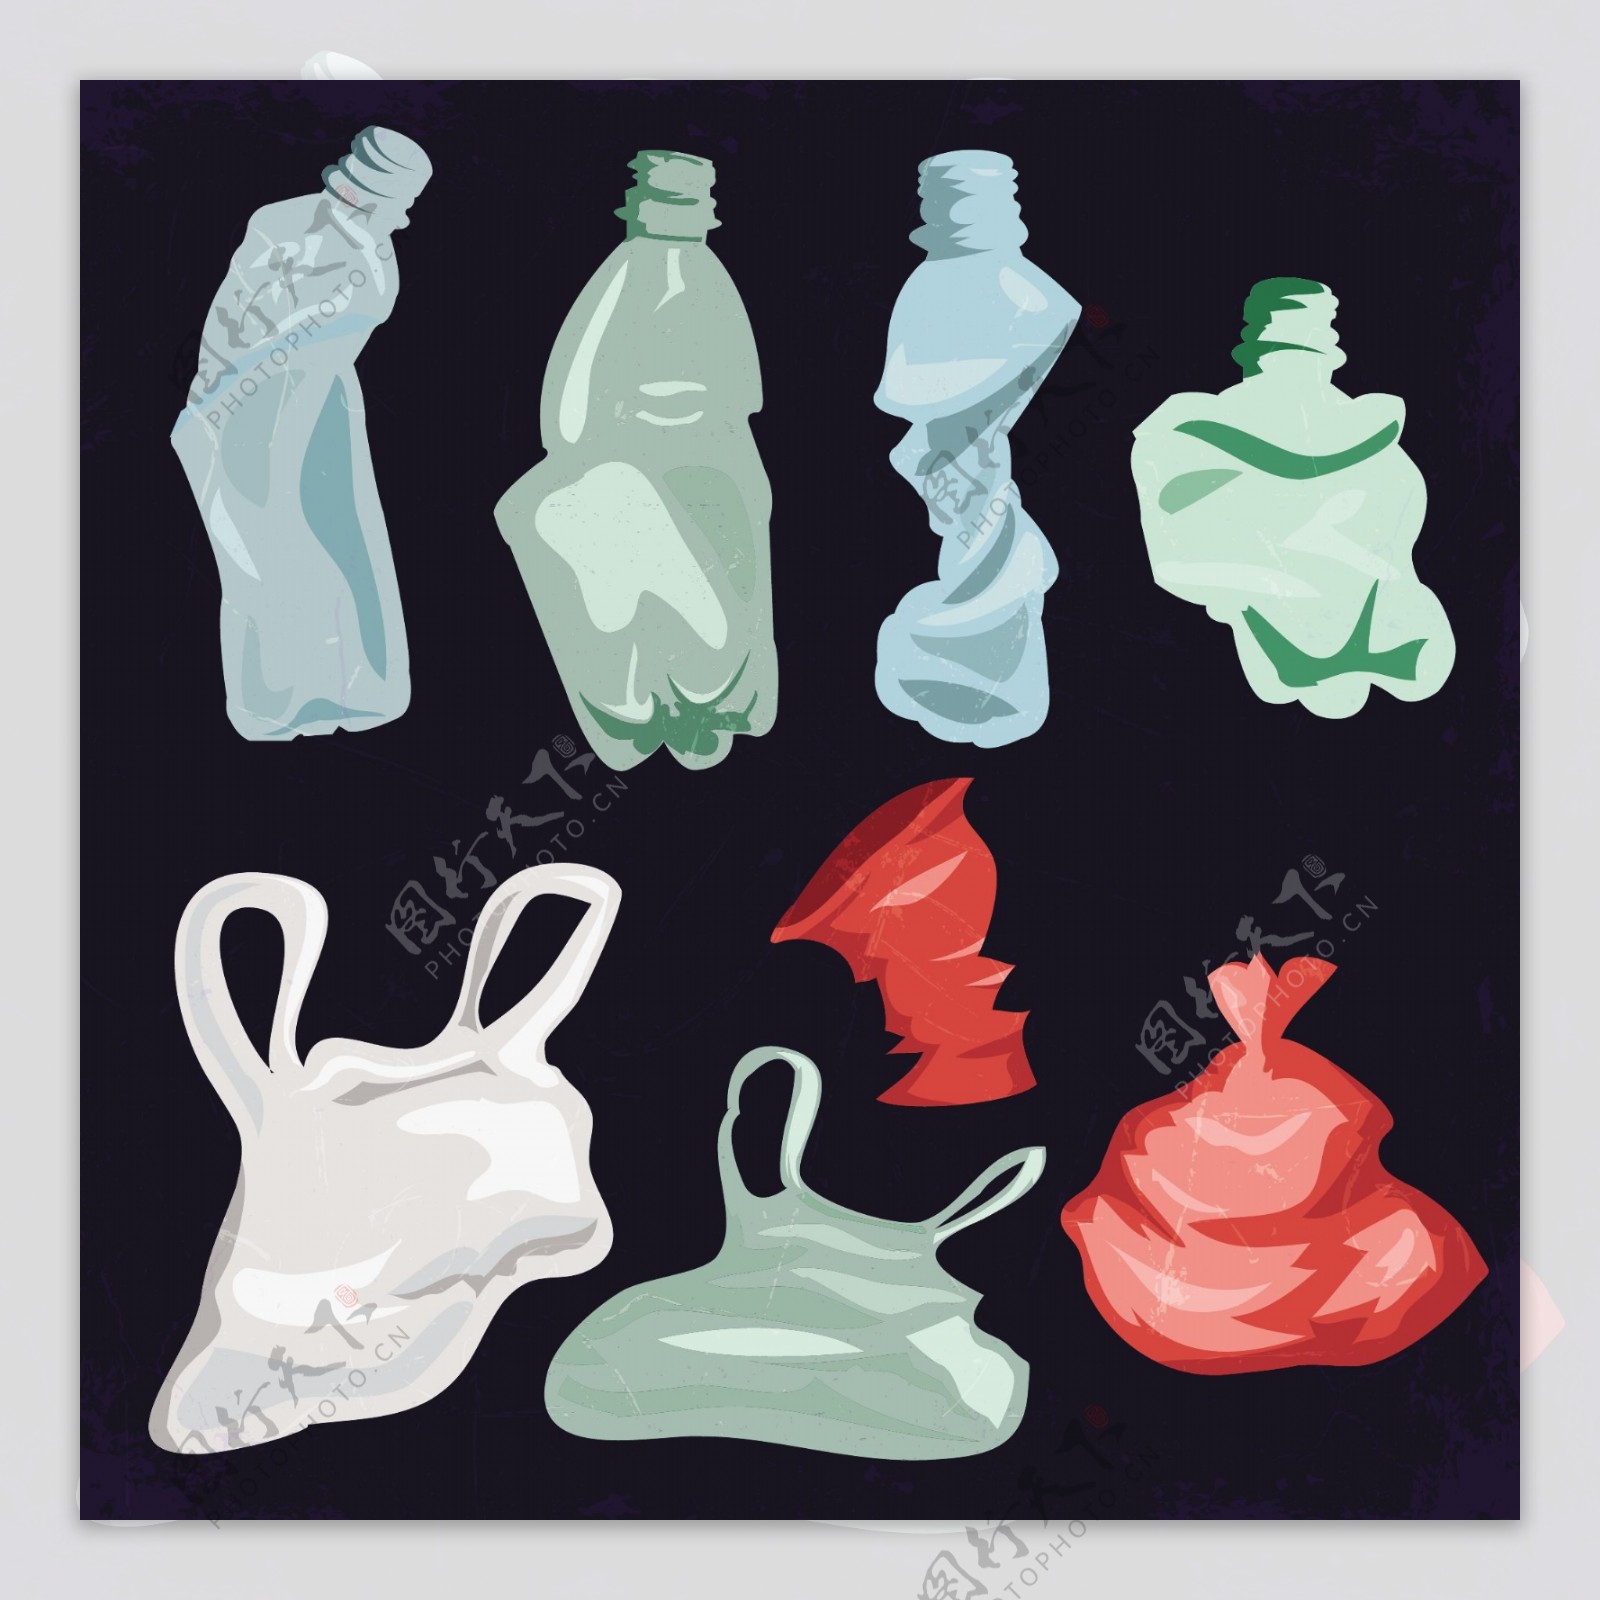 垃圾袋塑料瓶子矢量素材